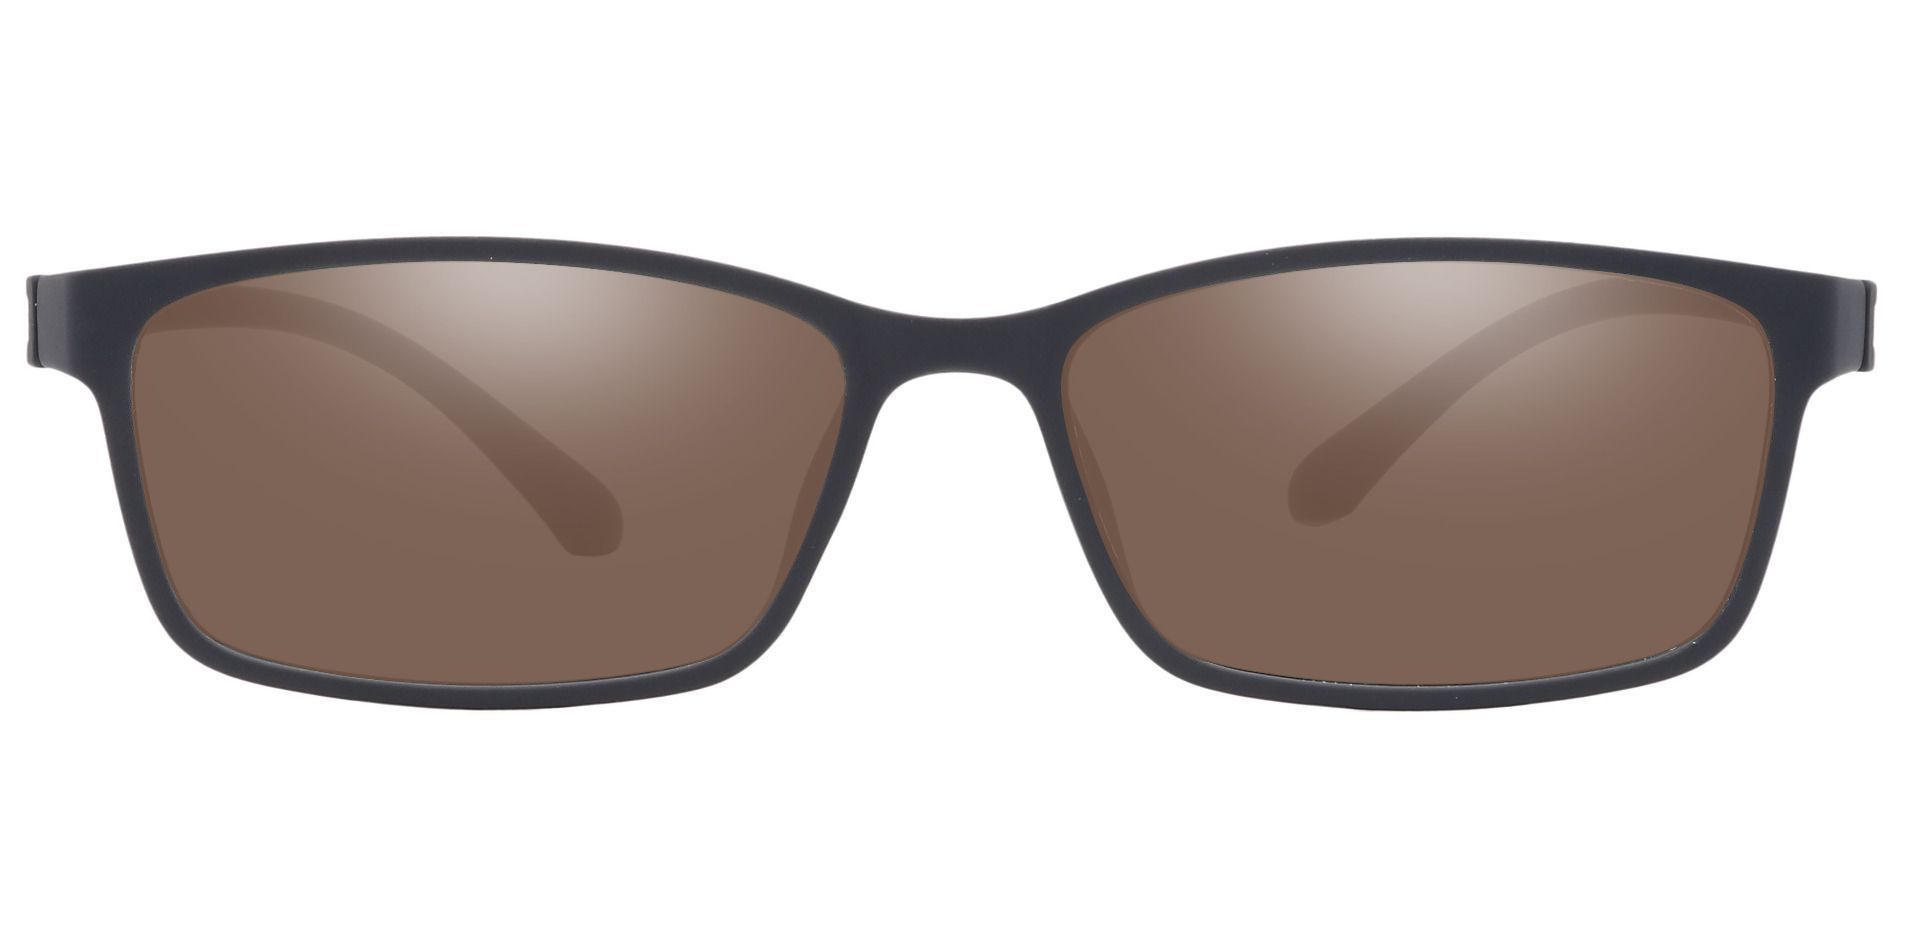 Wichita Rectangle Prescription Sunglasses Black Frame With Gray